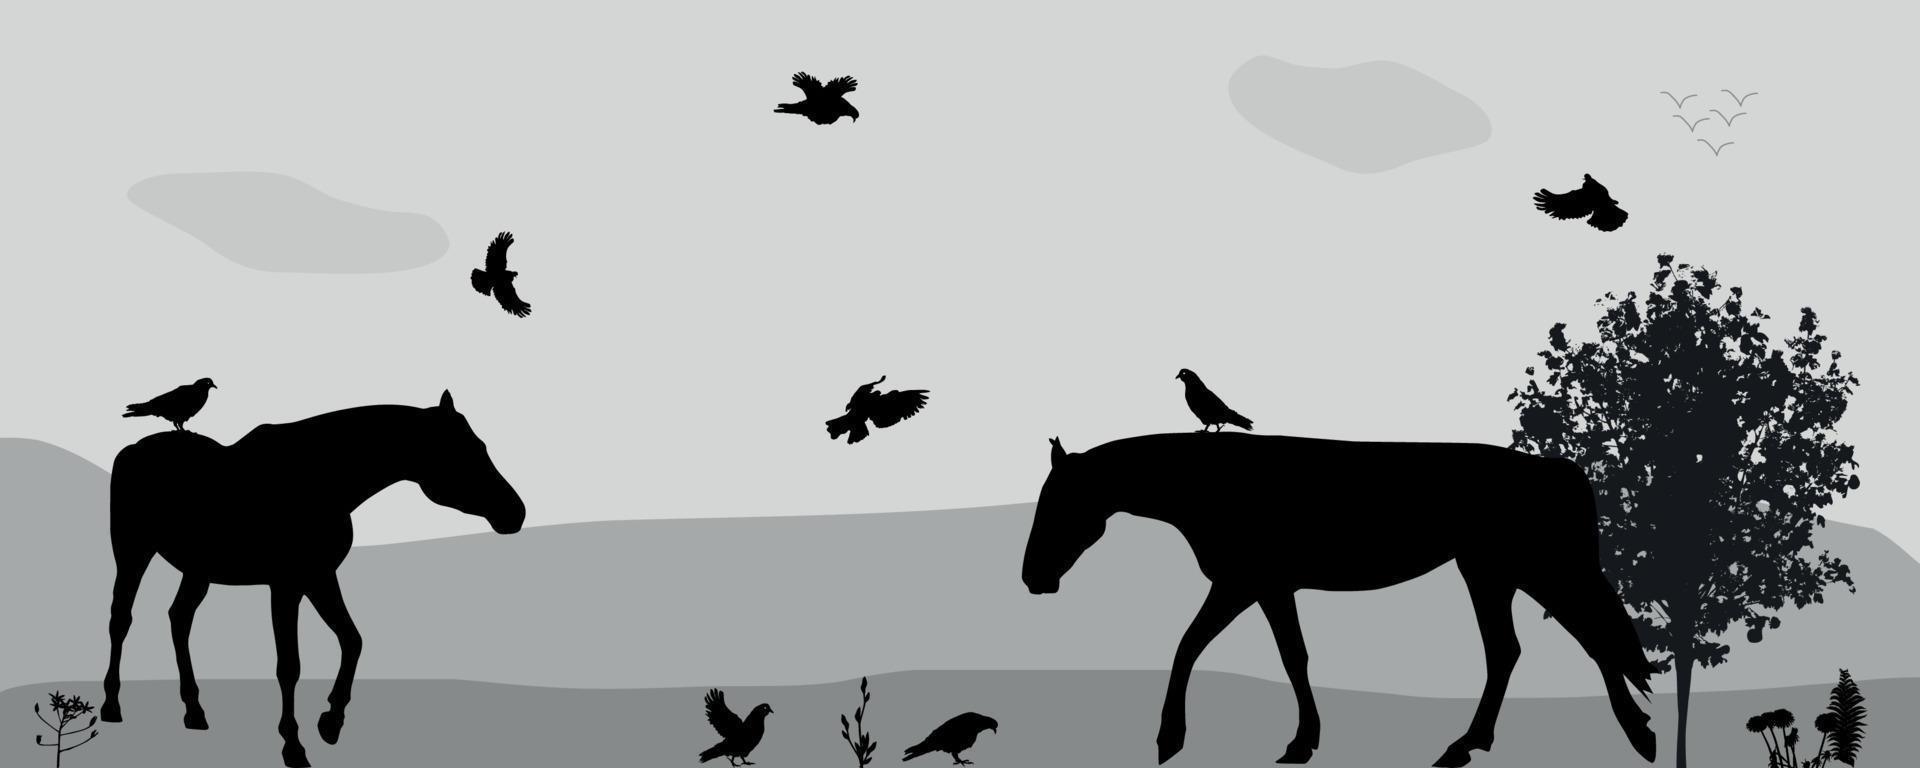 Coney Walk, Vögel fliegen in der Natur. Vektor-Illustration. vektor